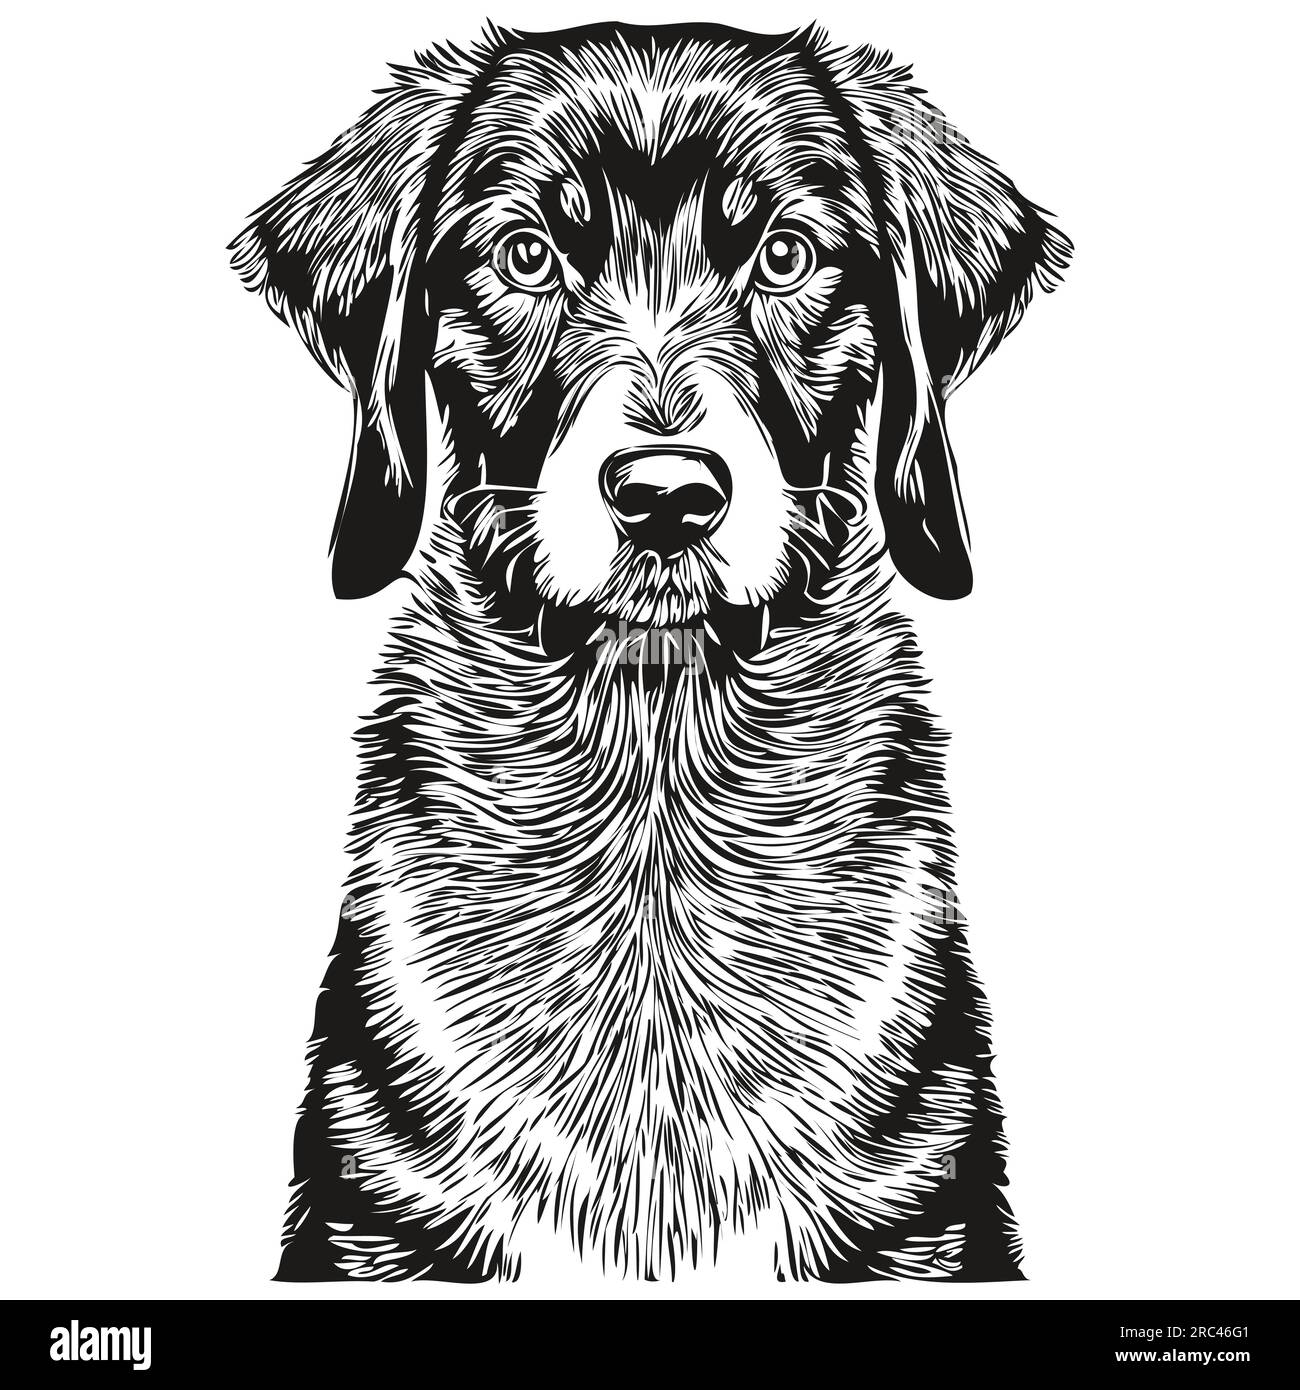 Silhouette d'animal de compagnie de chien noir et tan Coonhound, illustration de ligne d'animal dessiné à la main en noir et blanc vecteur silhouette réaliste d'animal de compagnie Illustration de Vecteur